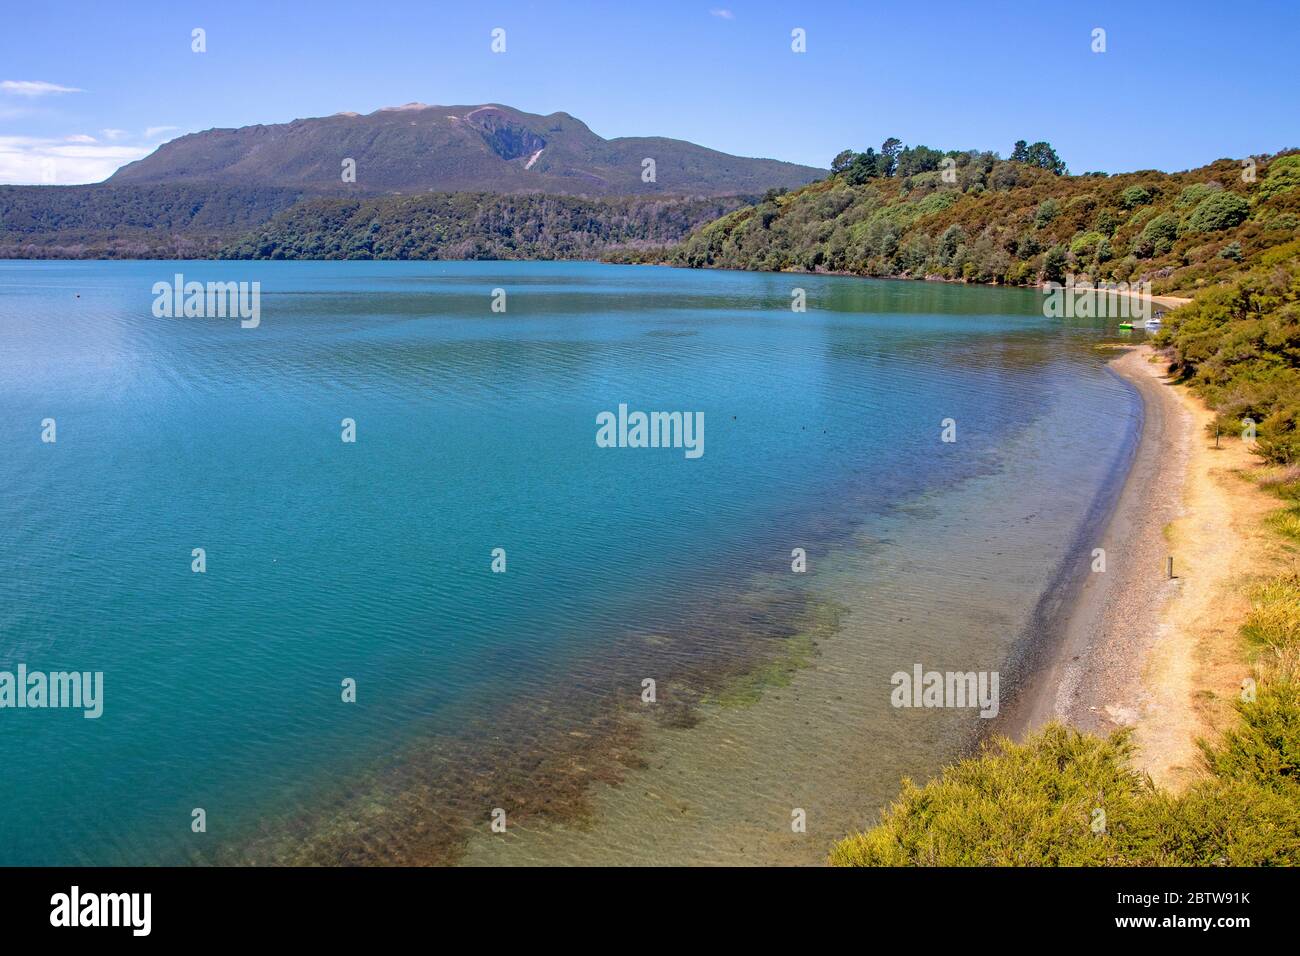 Playa de agua caliente en el lago Tarawera, con el Monte Tarawera subiendo por delante Foto de stock